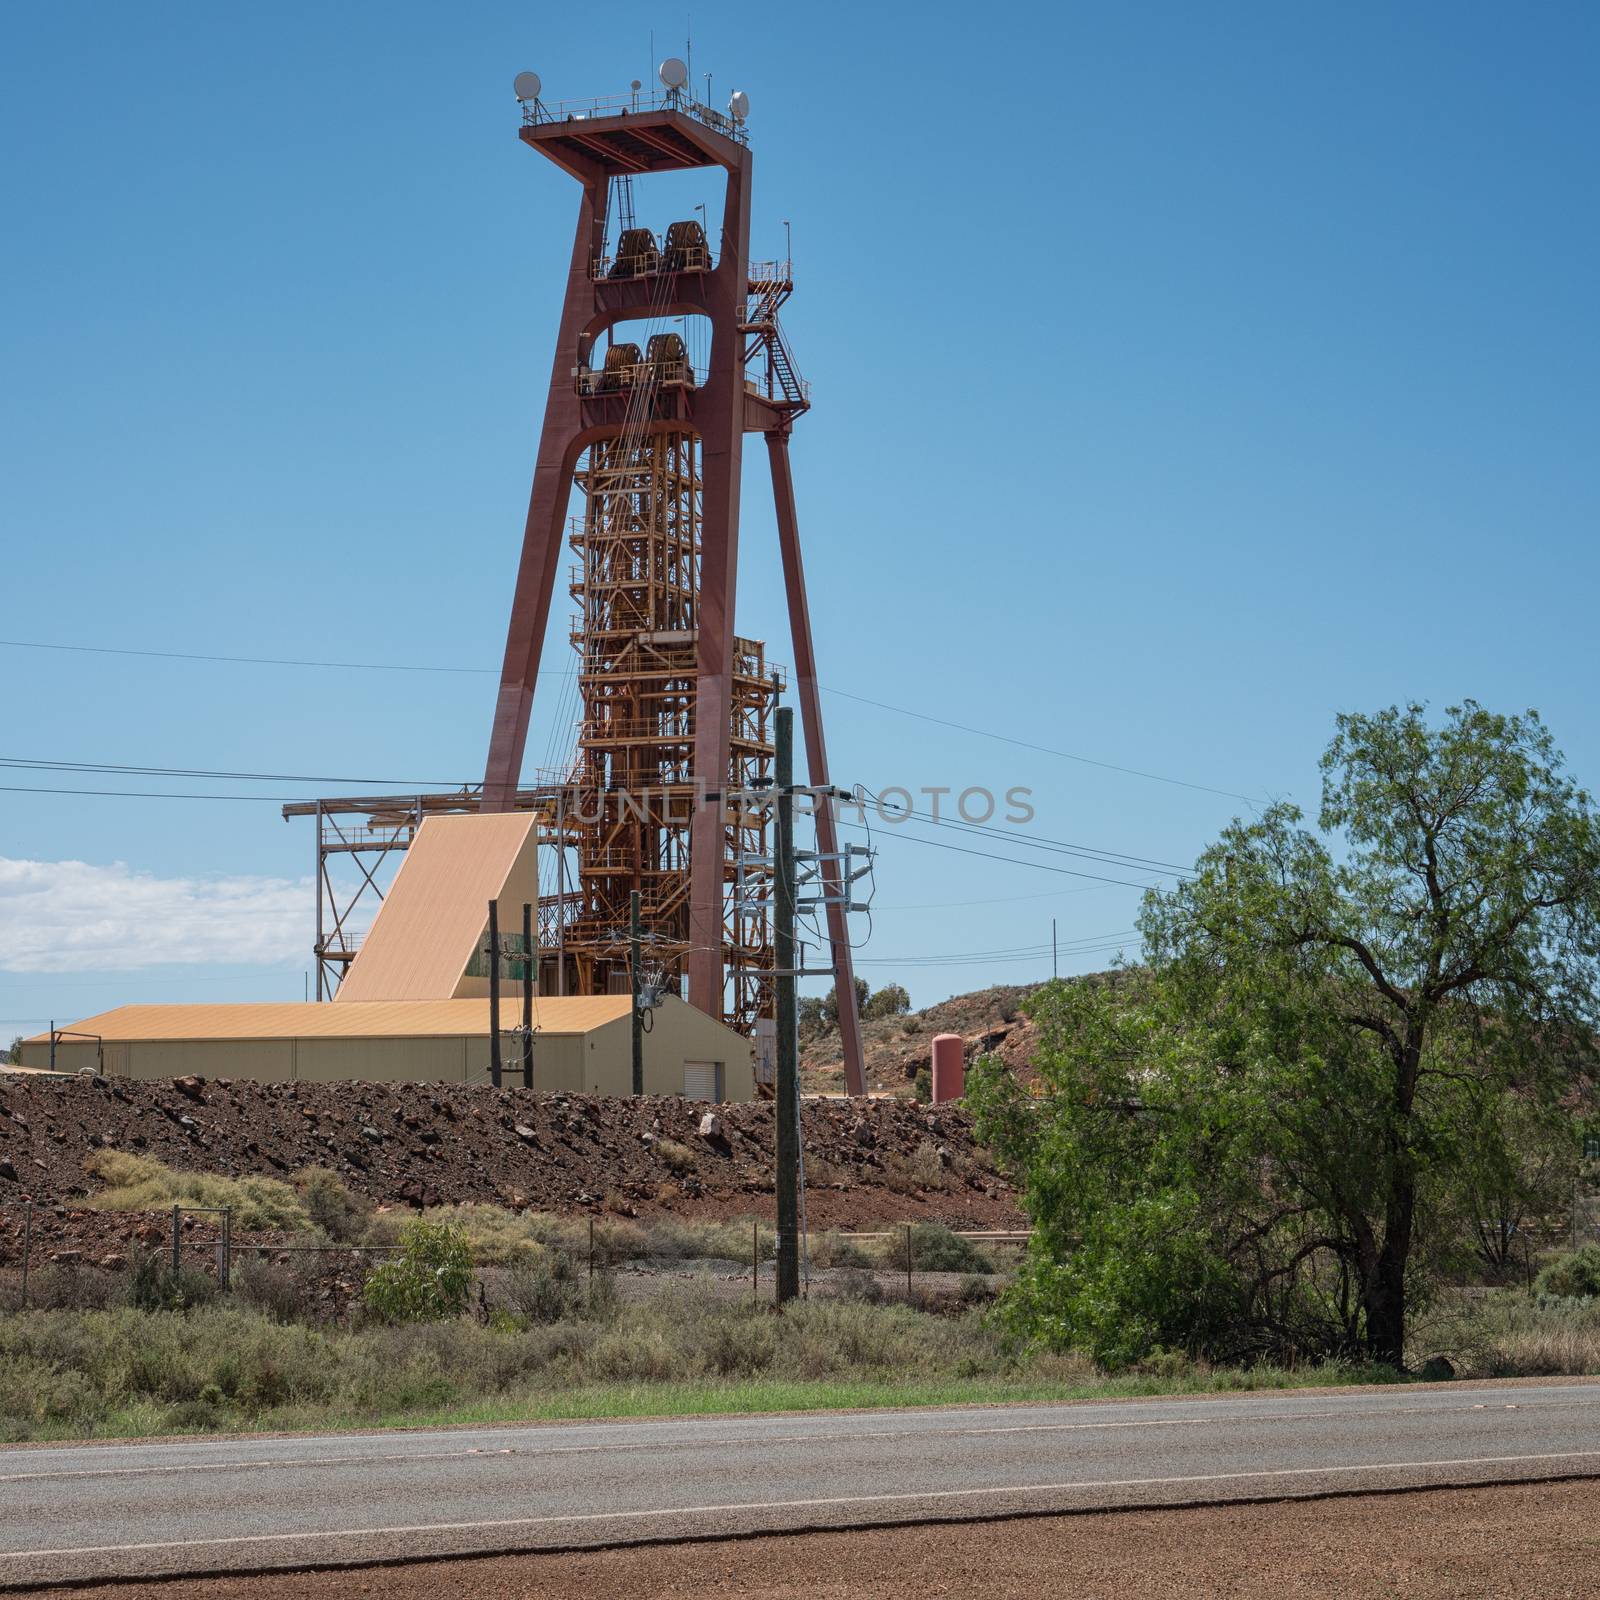 Gold Mine, Kalgoorlie, Western Australia by alfotokunst